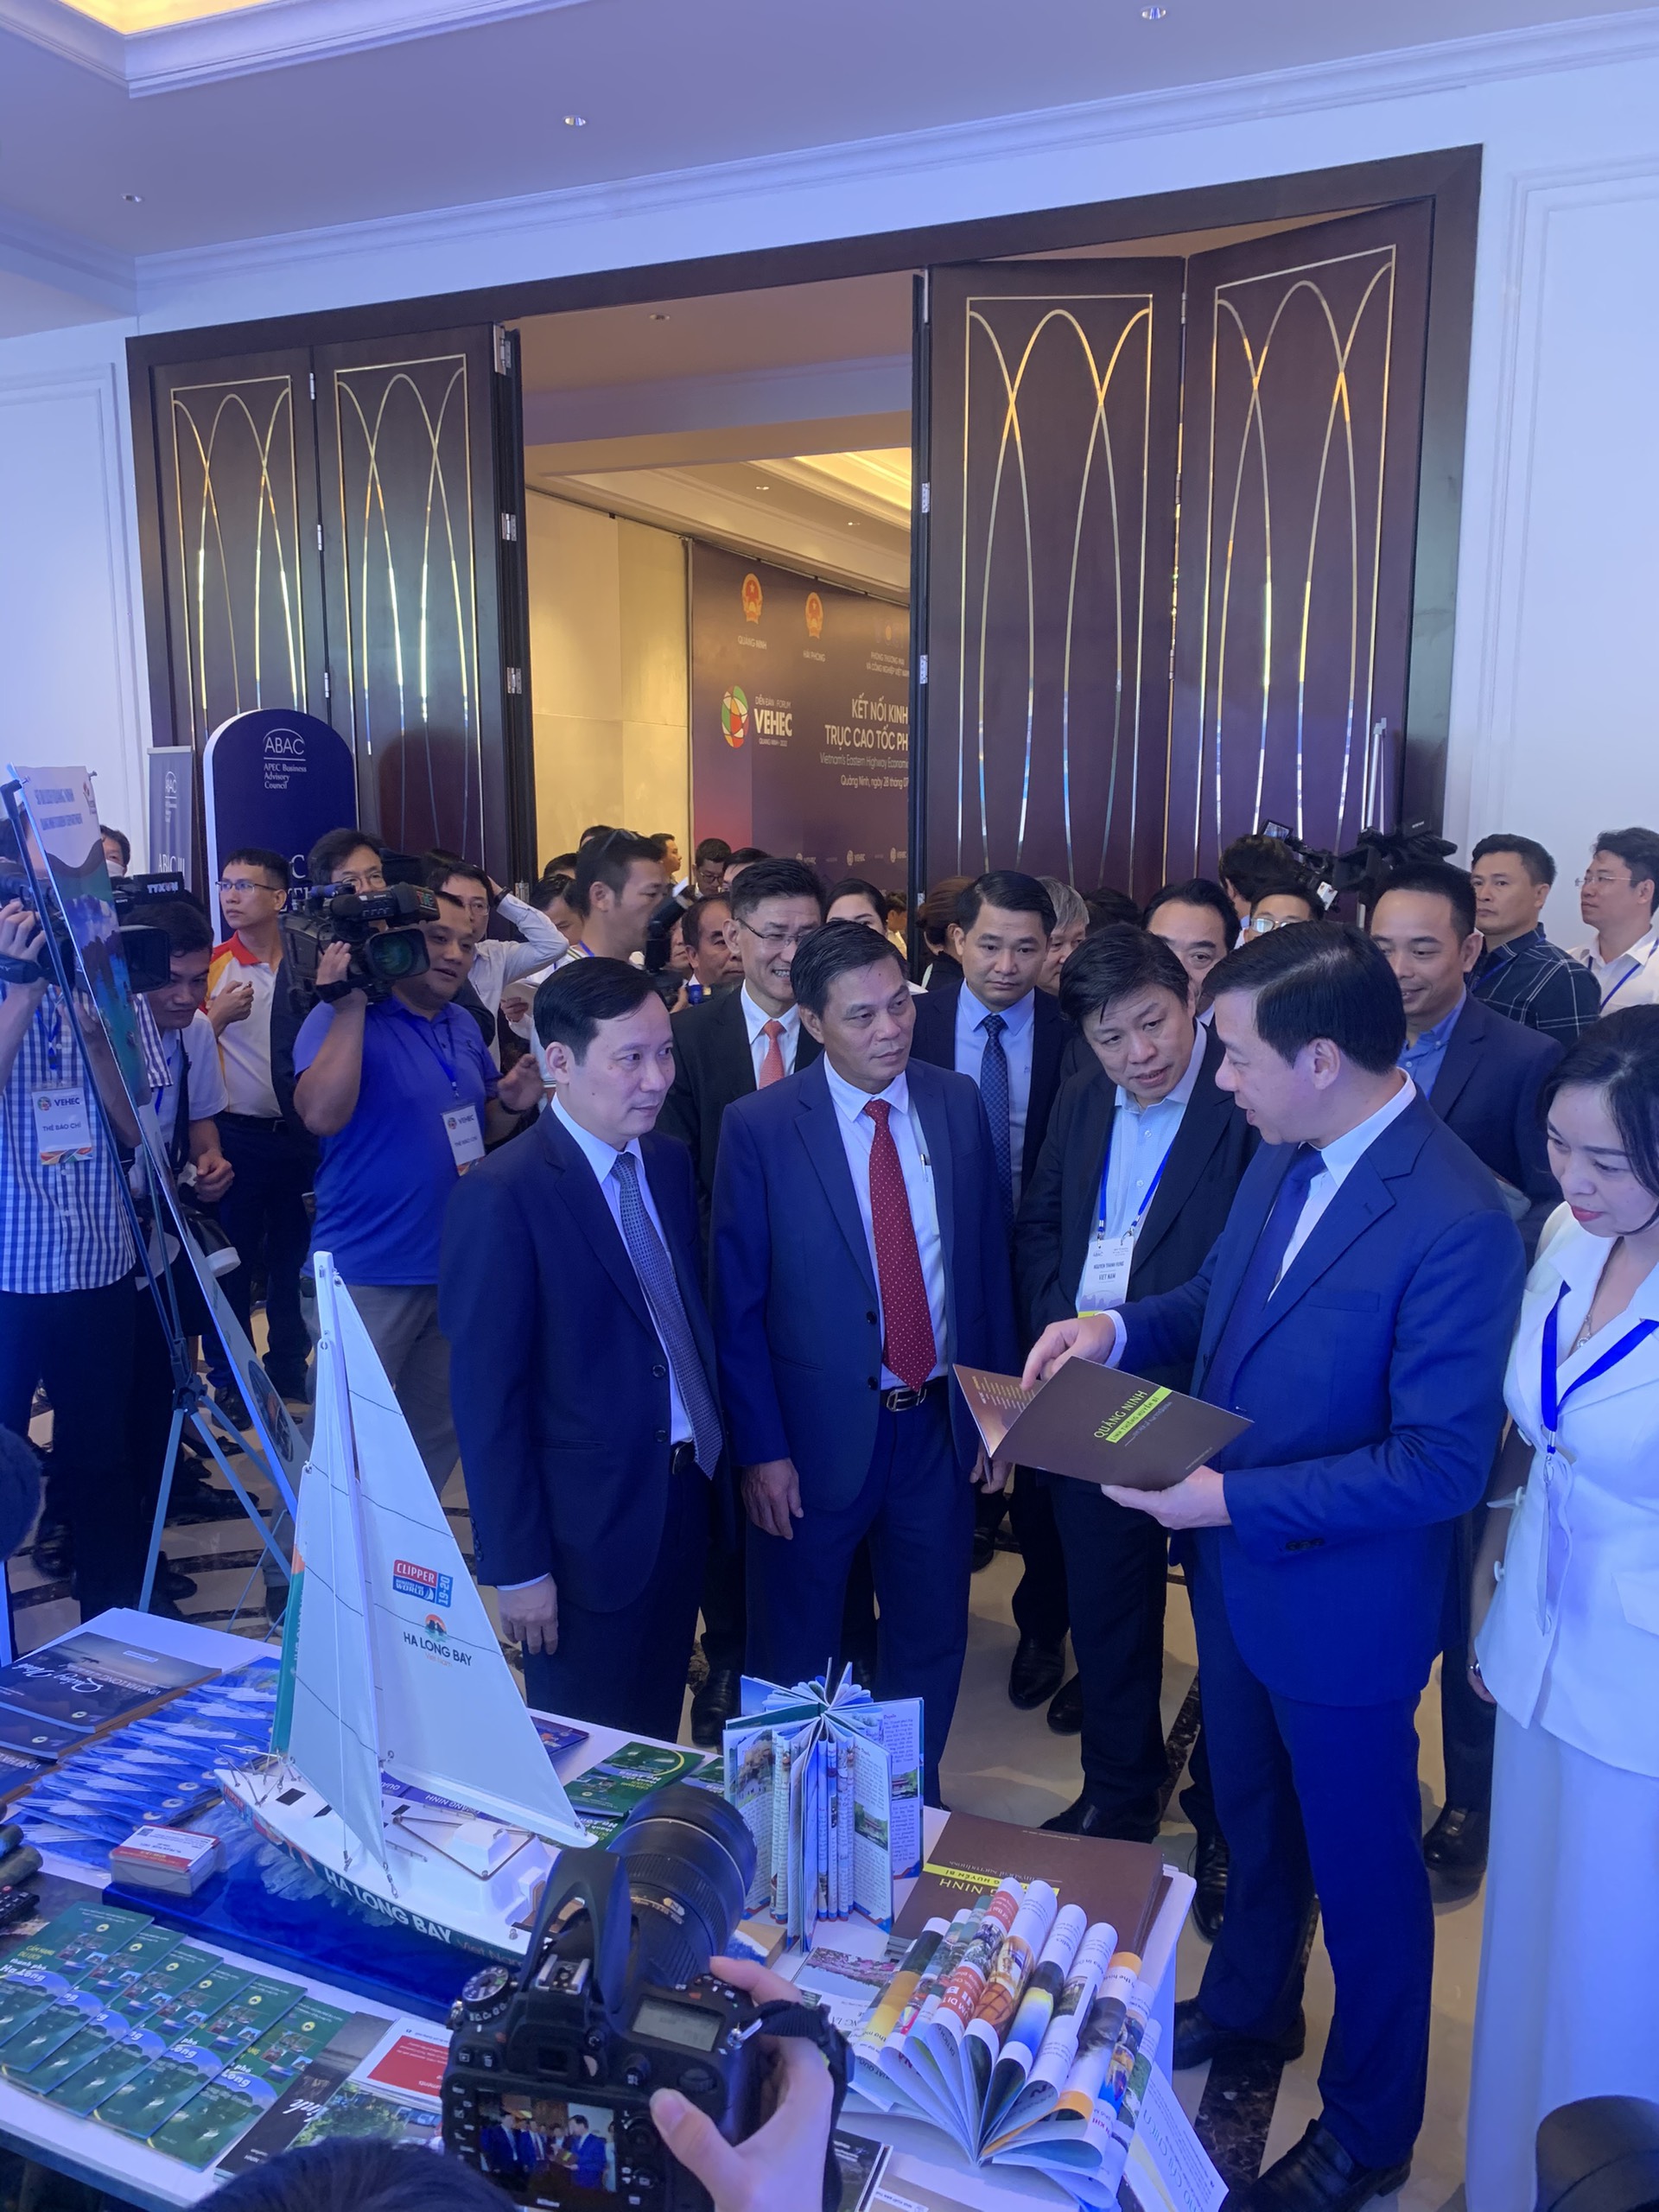 Sở Du lịch Quảng Ninh tổ chức gian hàng giới thiệu du lịch Quảng Ninh tại kỳ họp III – Hội đồng tư vấn kinh doanh APEC (ABAC III)